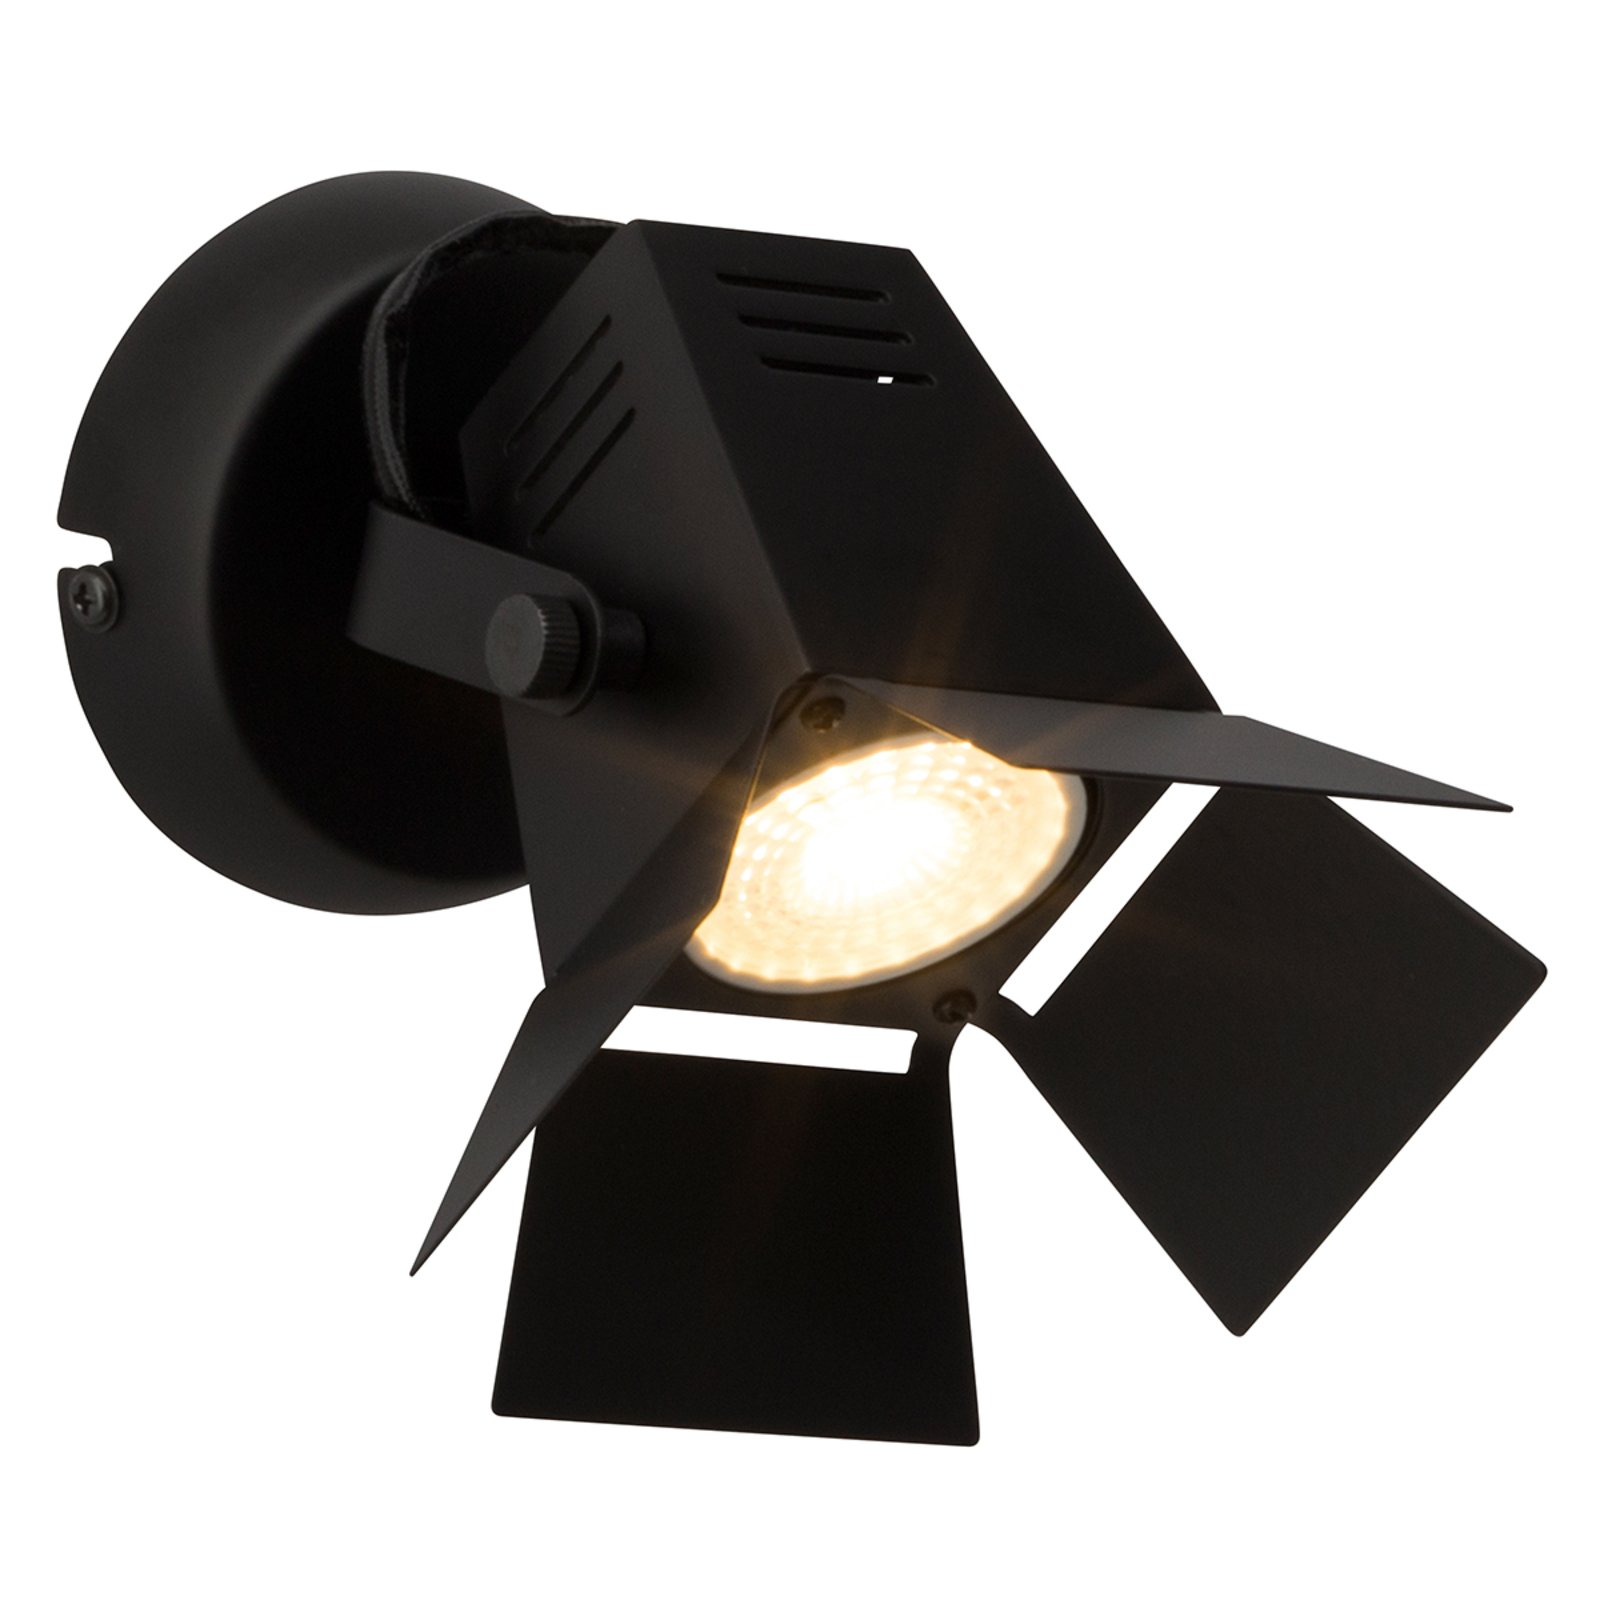 Film LED zidna svjetiljka tehničkog izgleda, crna